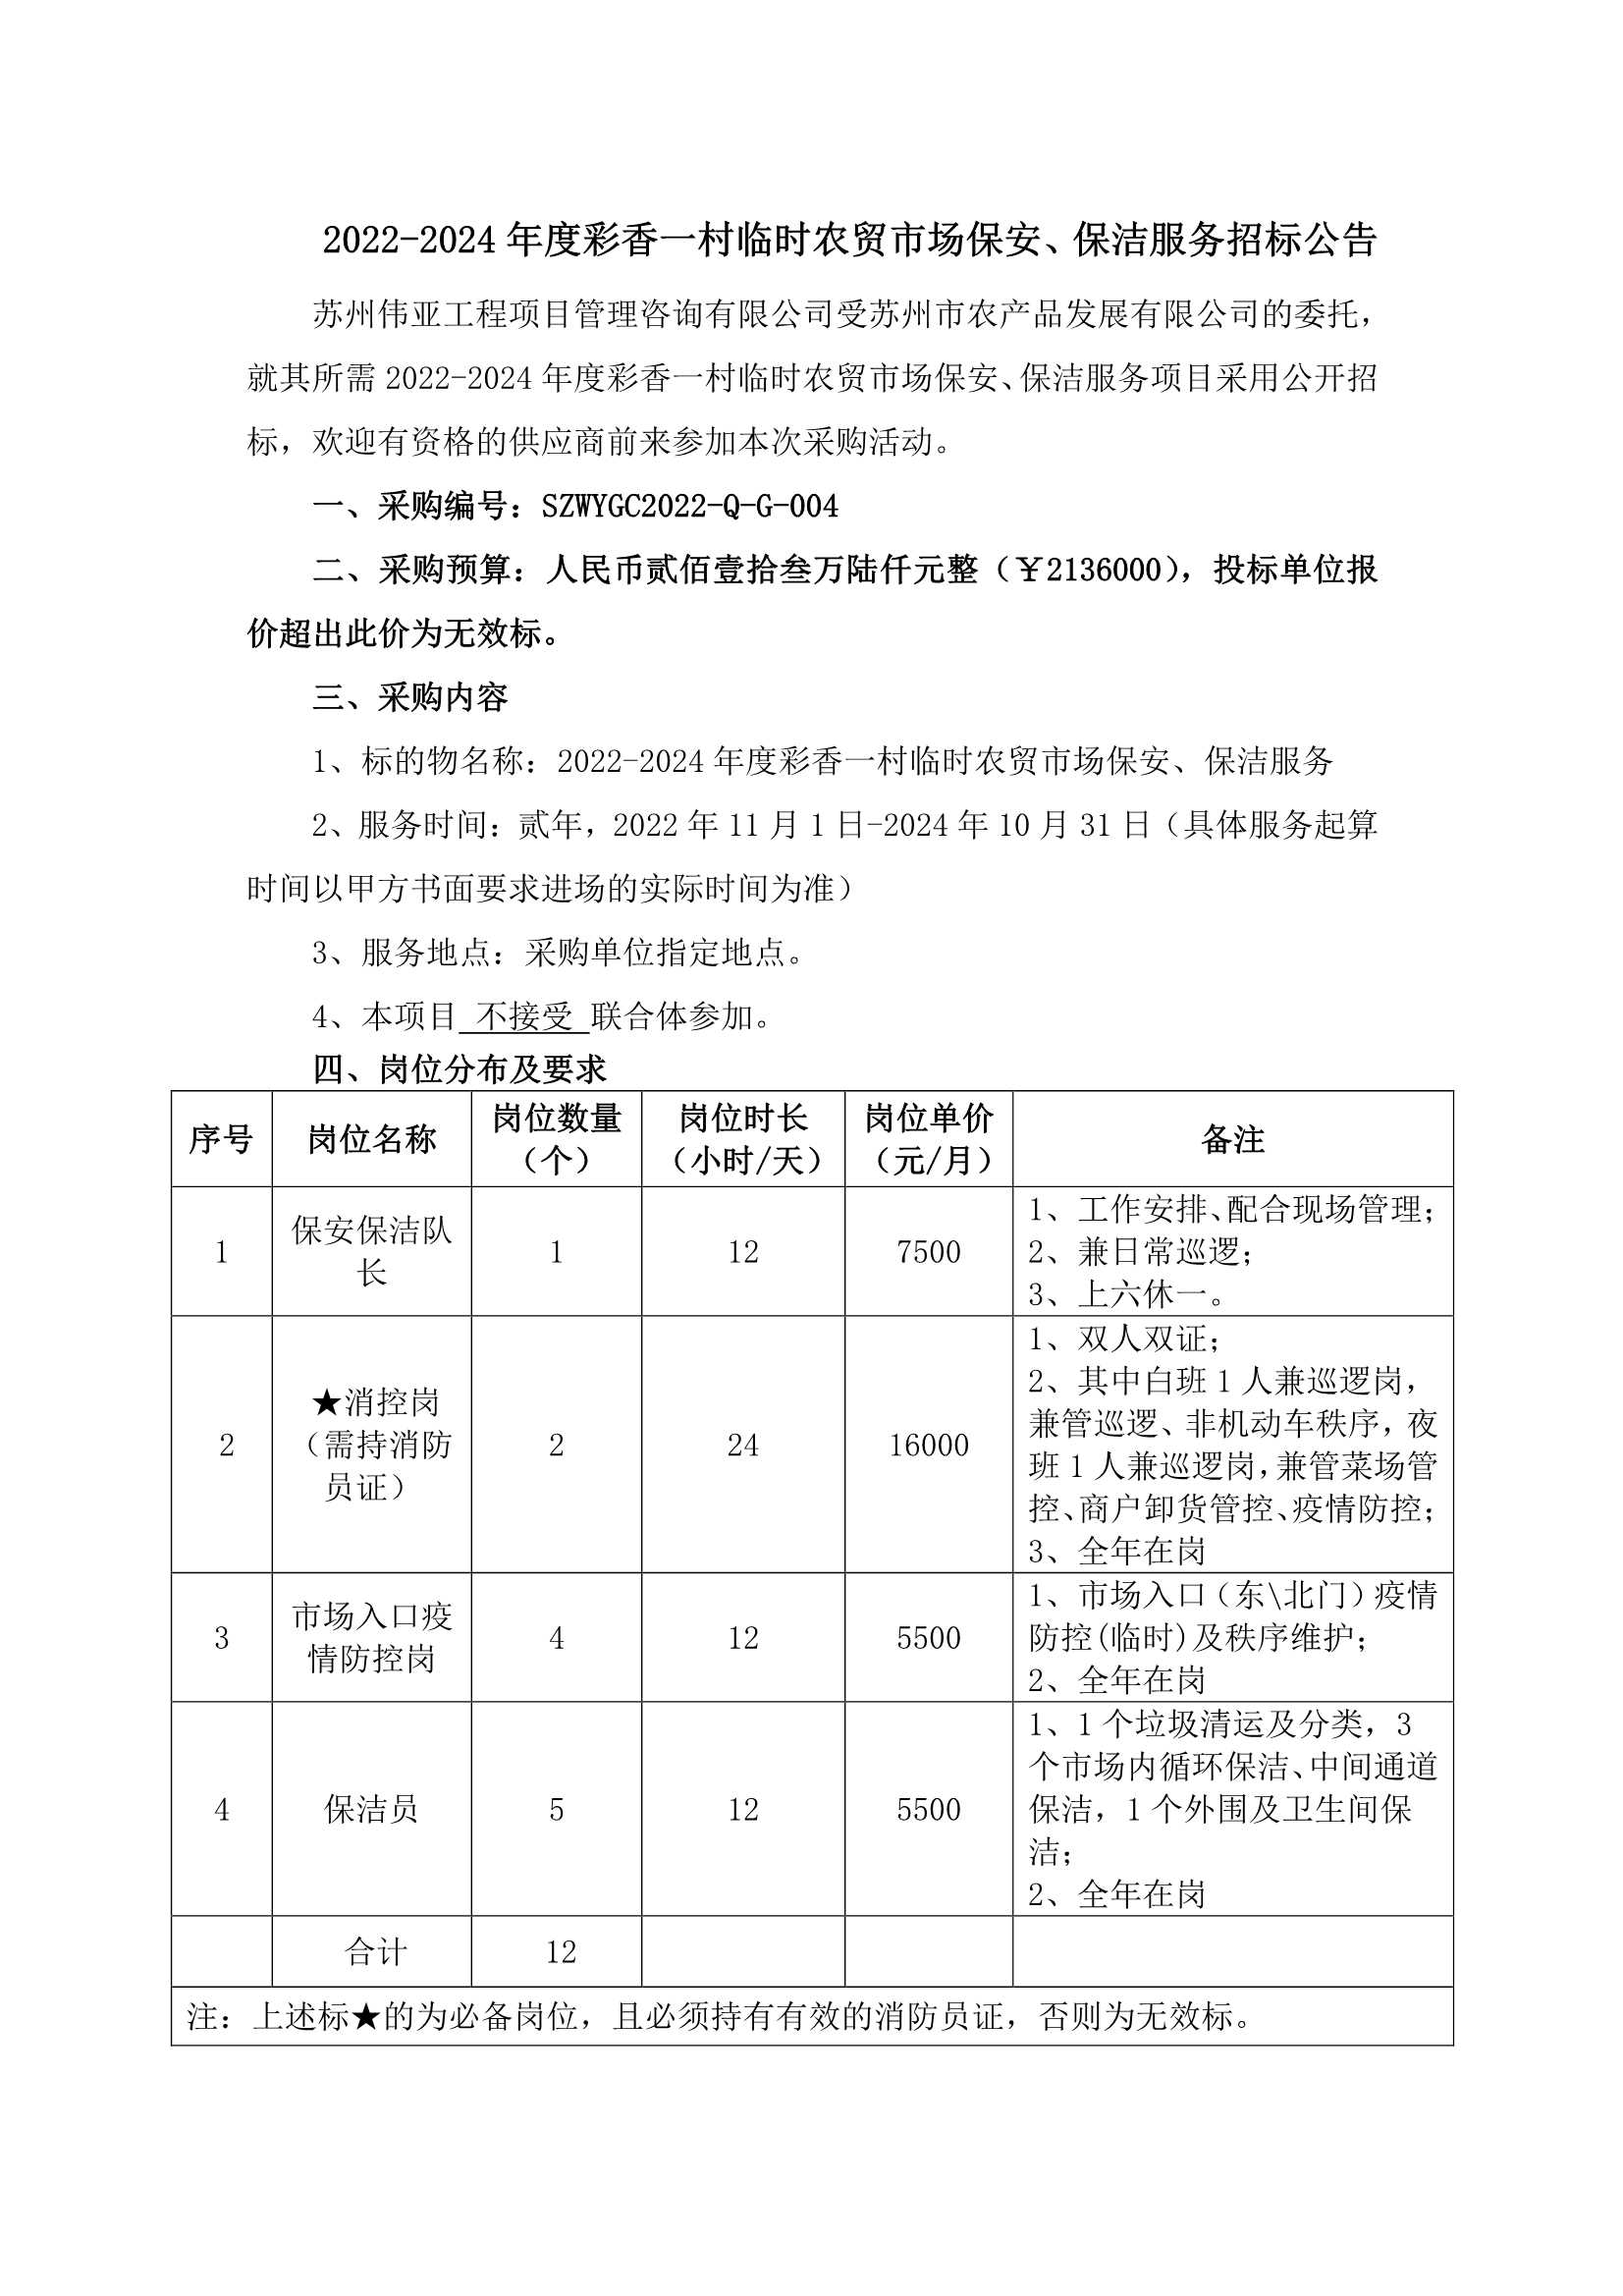 2022-2024年度彩香一村临时农贸市场保安、保洁服务招标公告_1.Png